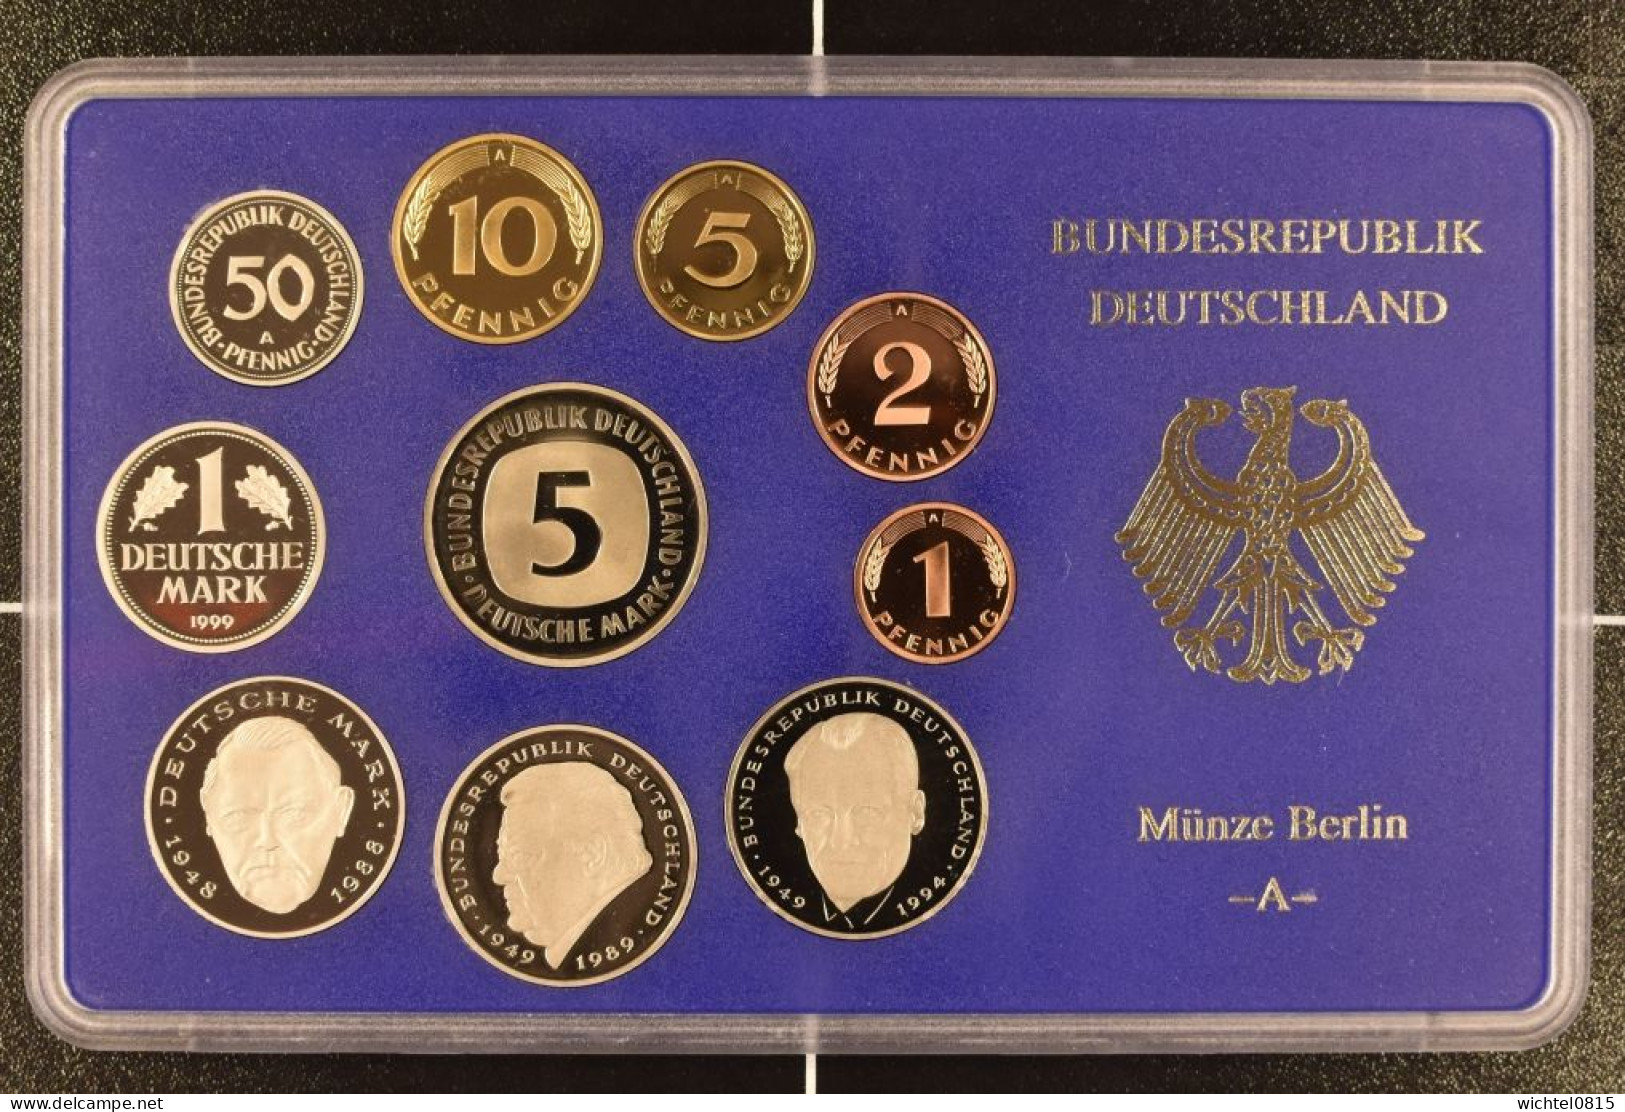 Kursmünzsatz BRD 1999 Prägestätte A [Berlin] - Mint Sets & Proof Sets